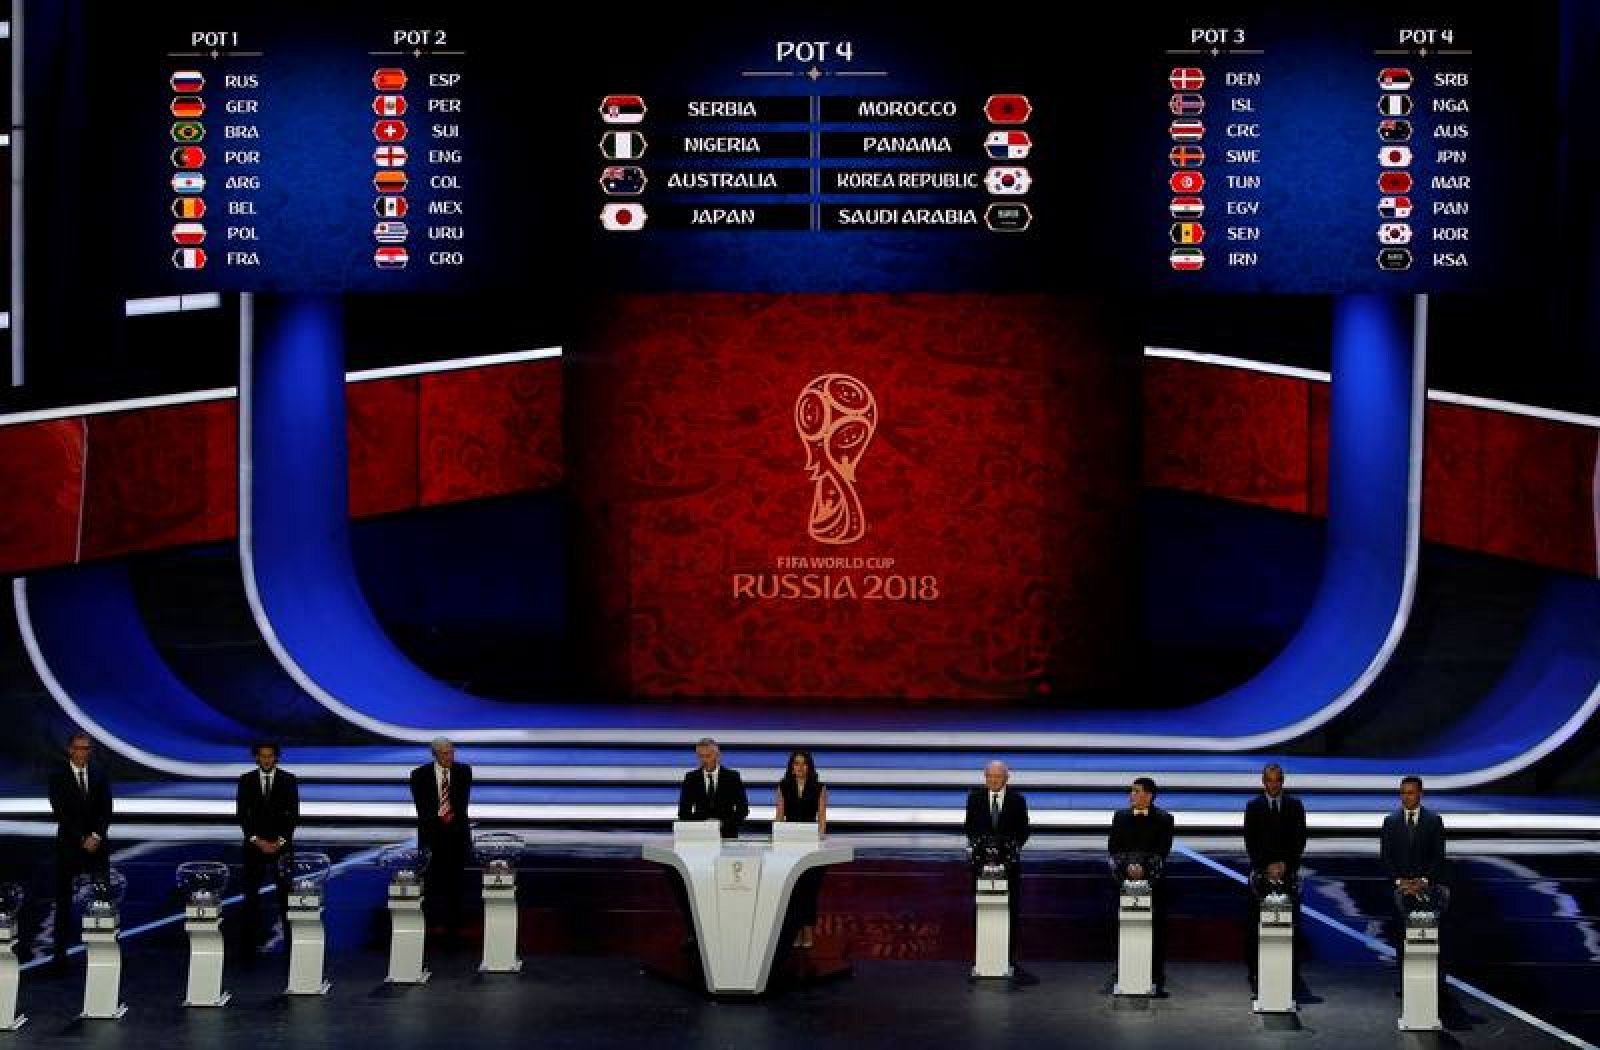 Vista general del escenario durante el sorteo del Mundial de Rusia 2018.